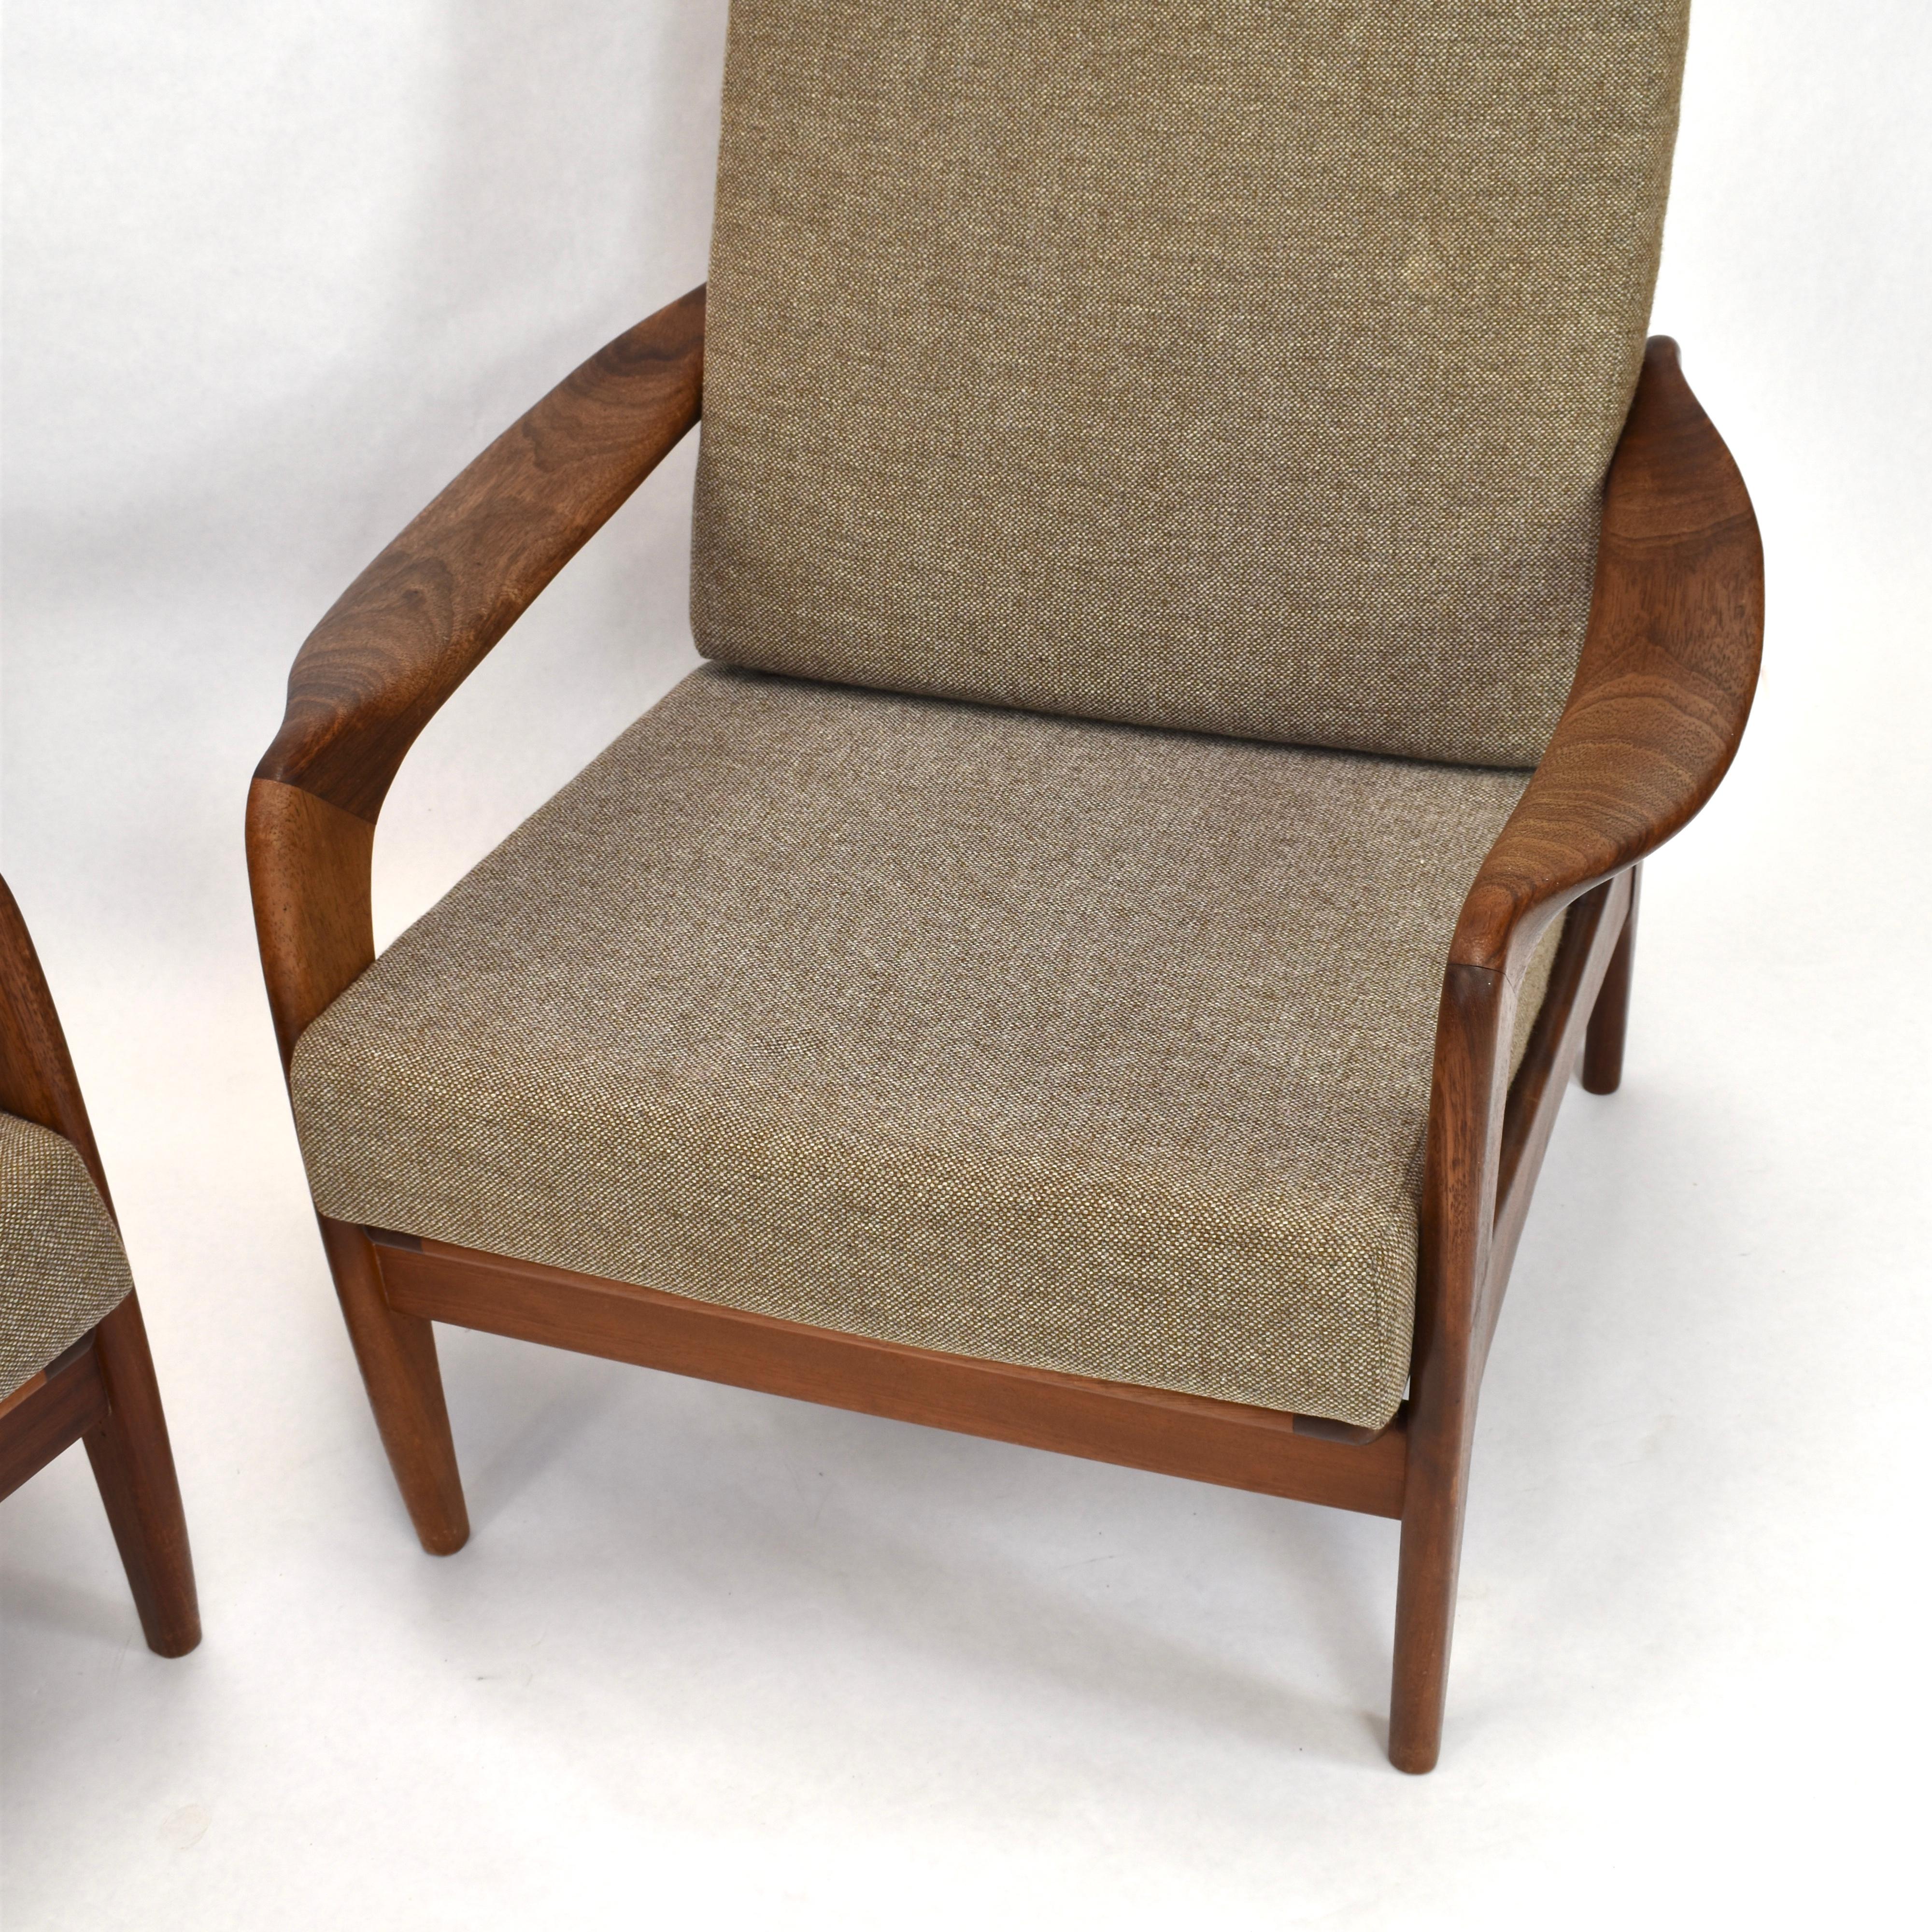 Mid-20th Century Teak Lounge Chairs by De Ster Gelderland, Netherlands, circa 1960